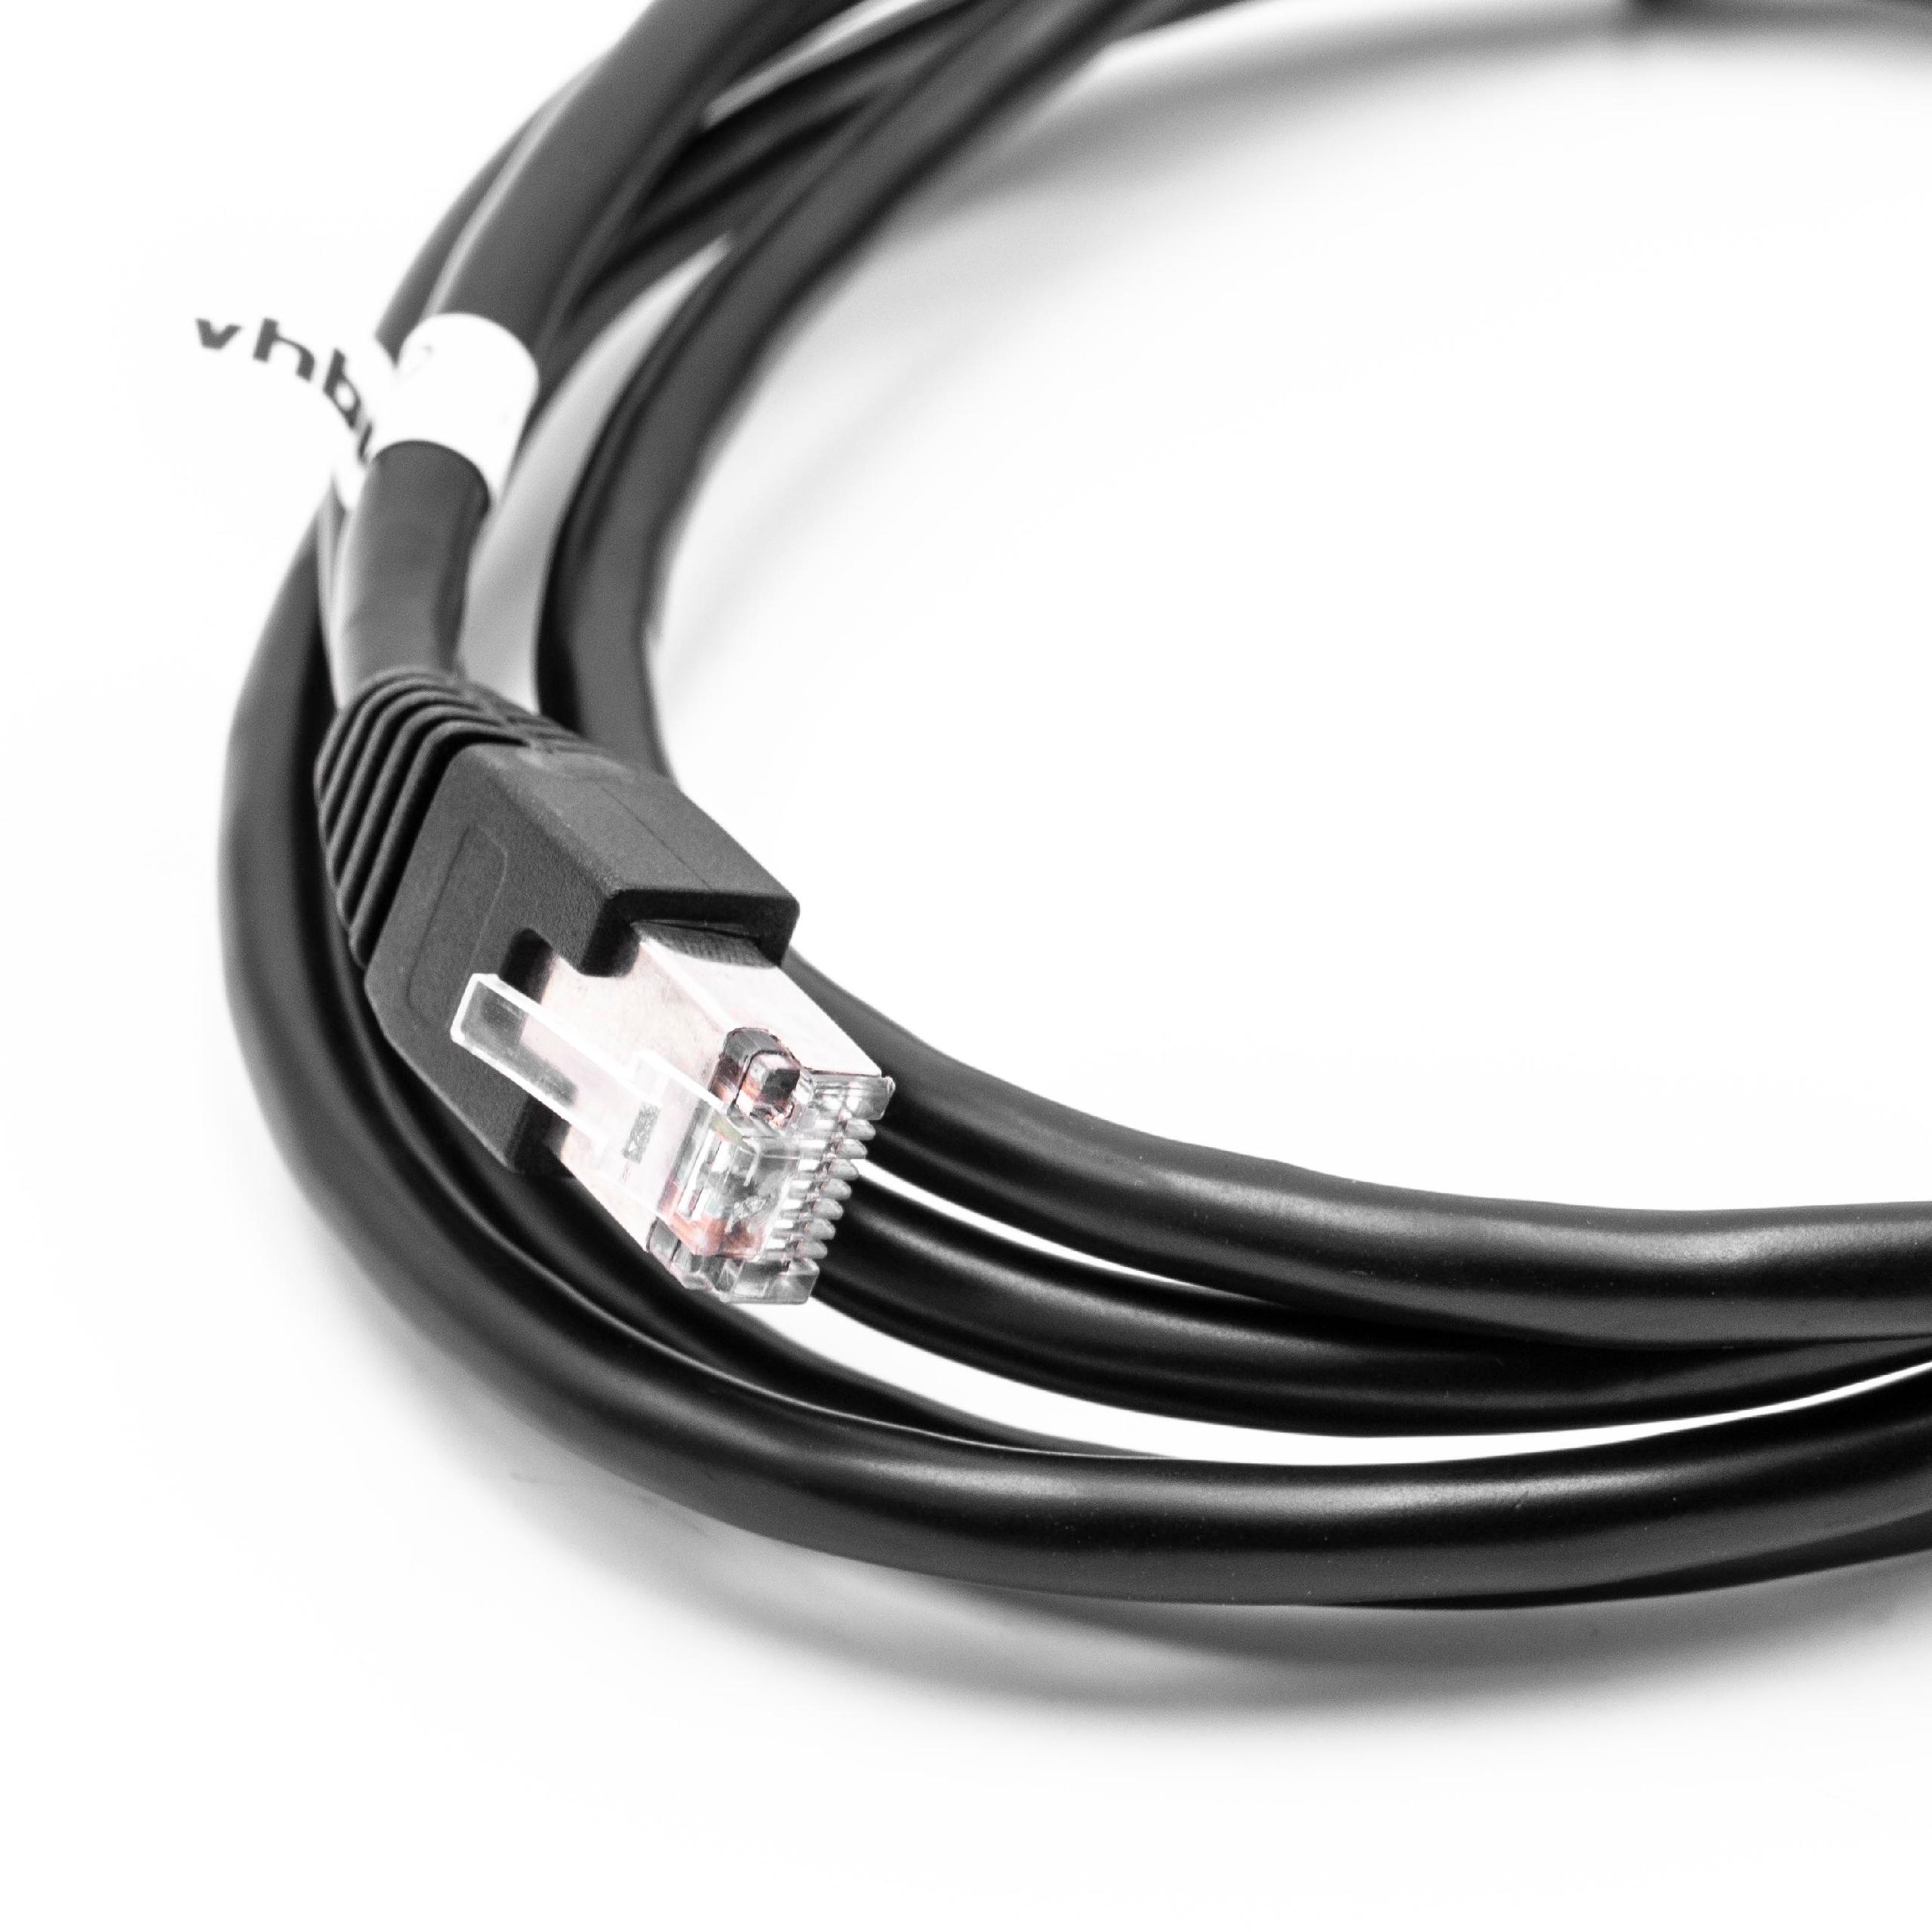 Cat6 Verlängerungskabel RJ45 Stecker auf RJ45 Buchse - Ethernet LAN Kabel mit RJ45 Einbaubuchse, 2 m